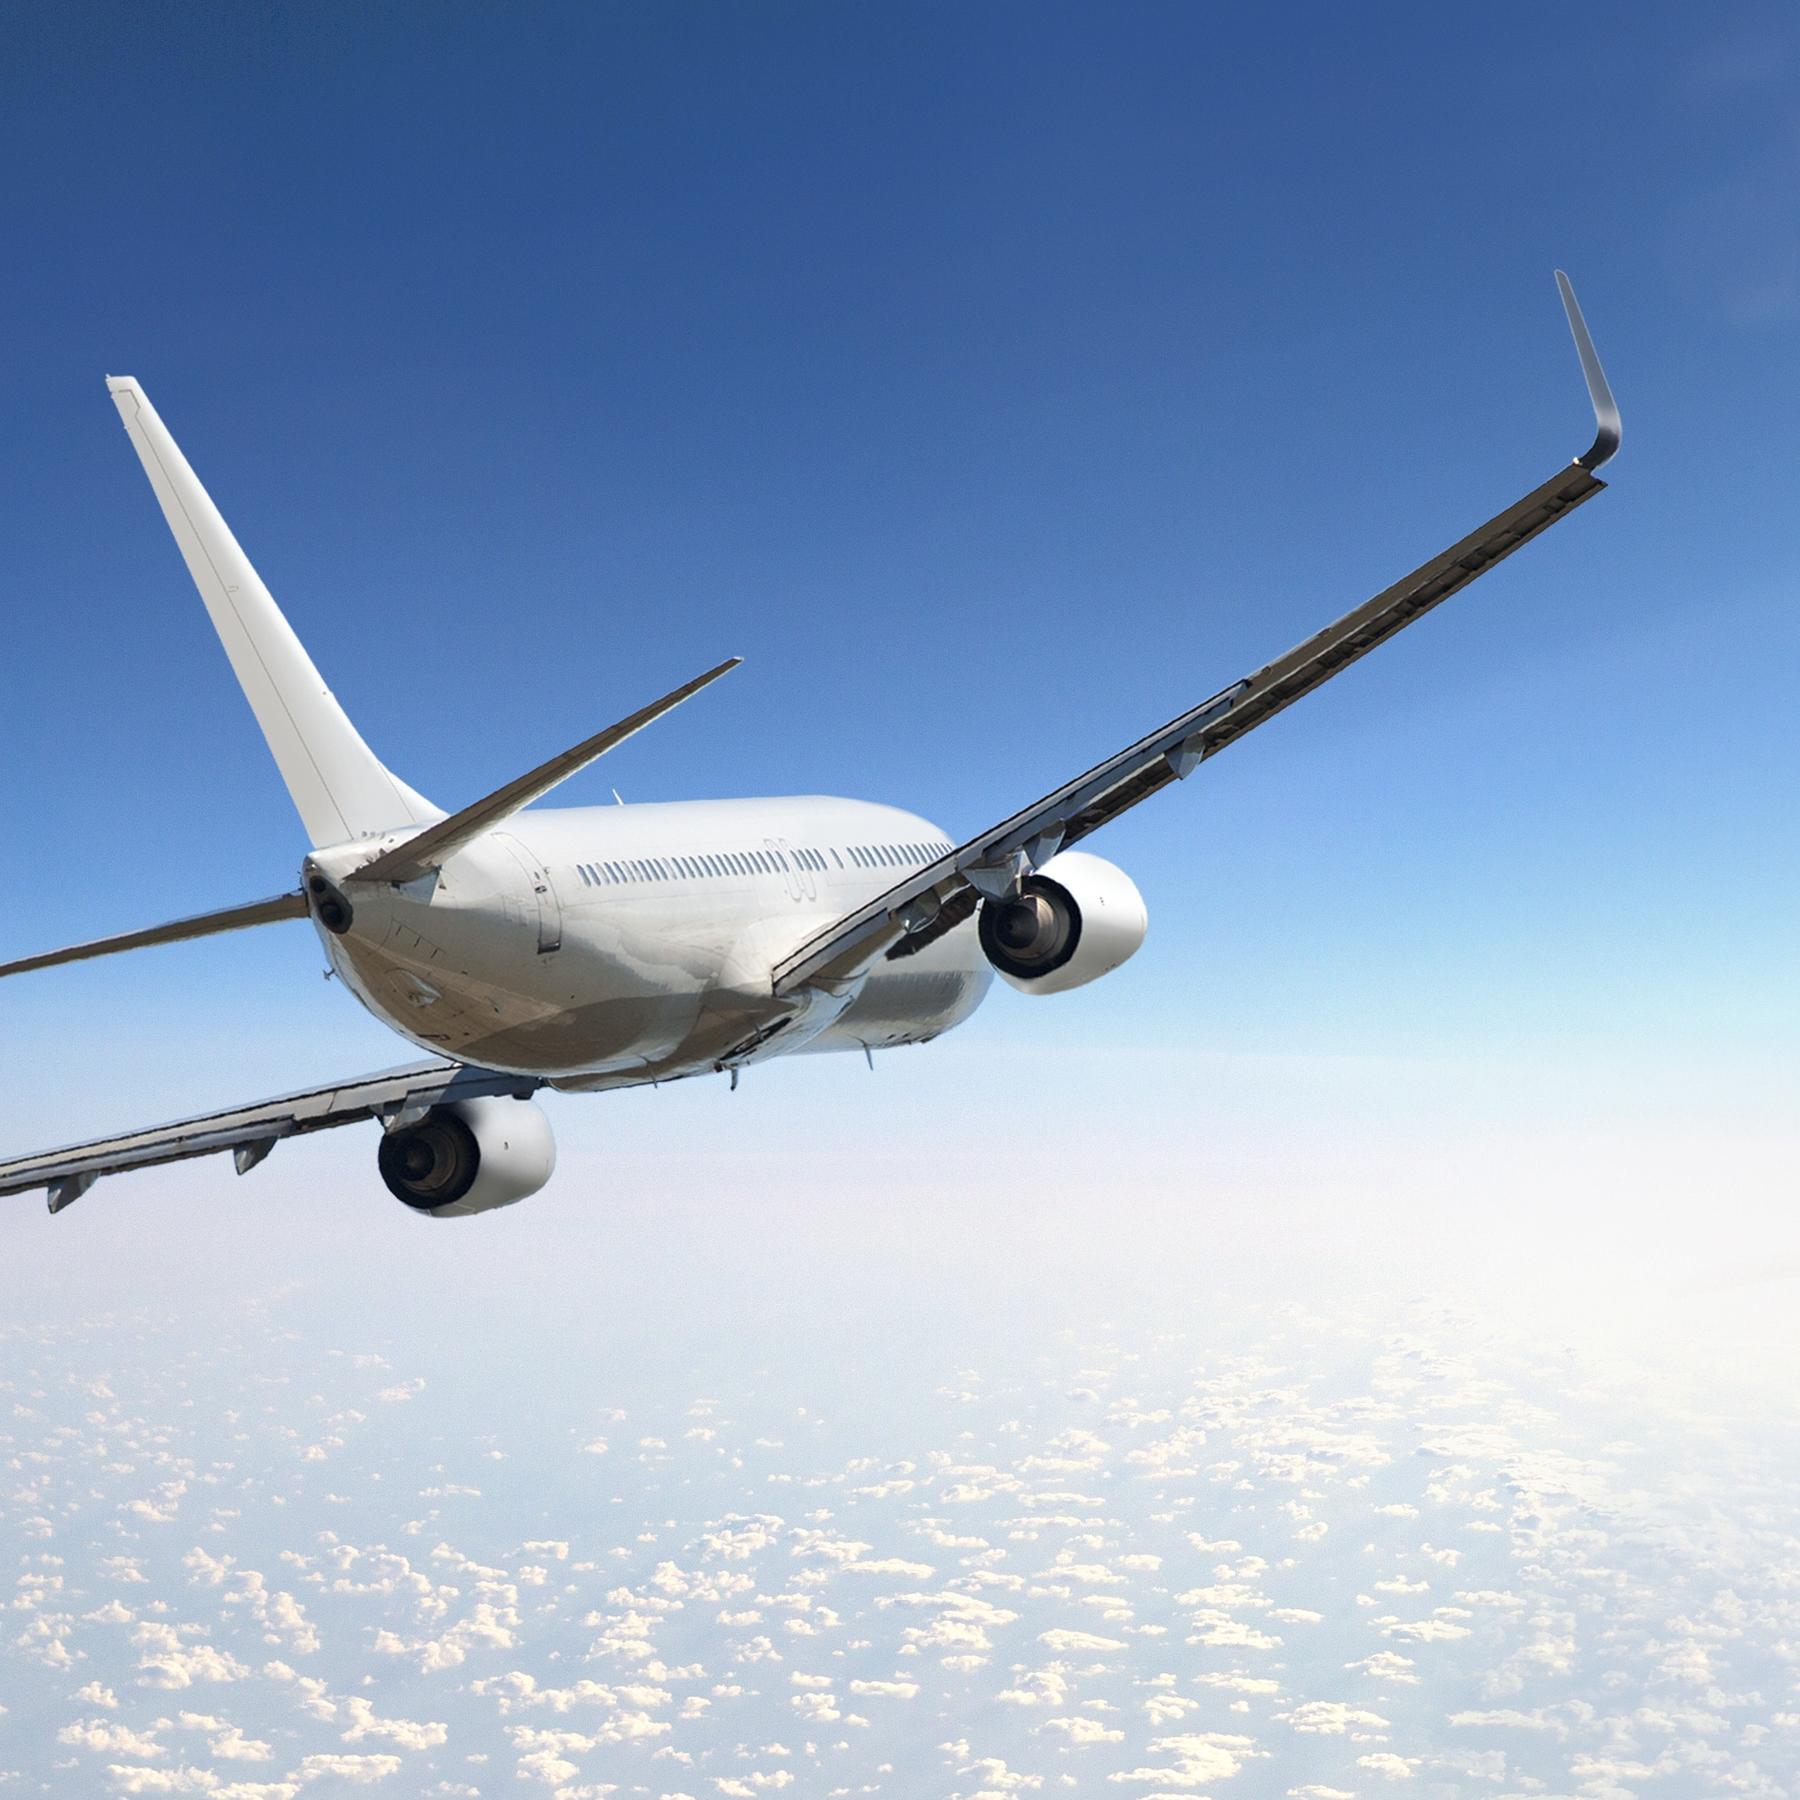 Flugzeug ohne Pilot - Wann gehen wir autonom in die Luft?